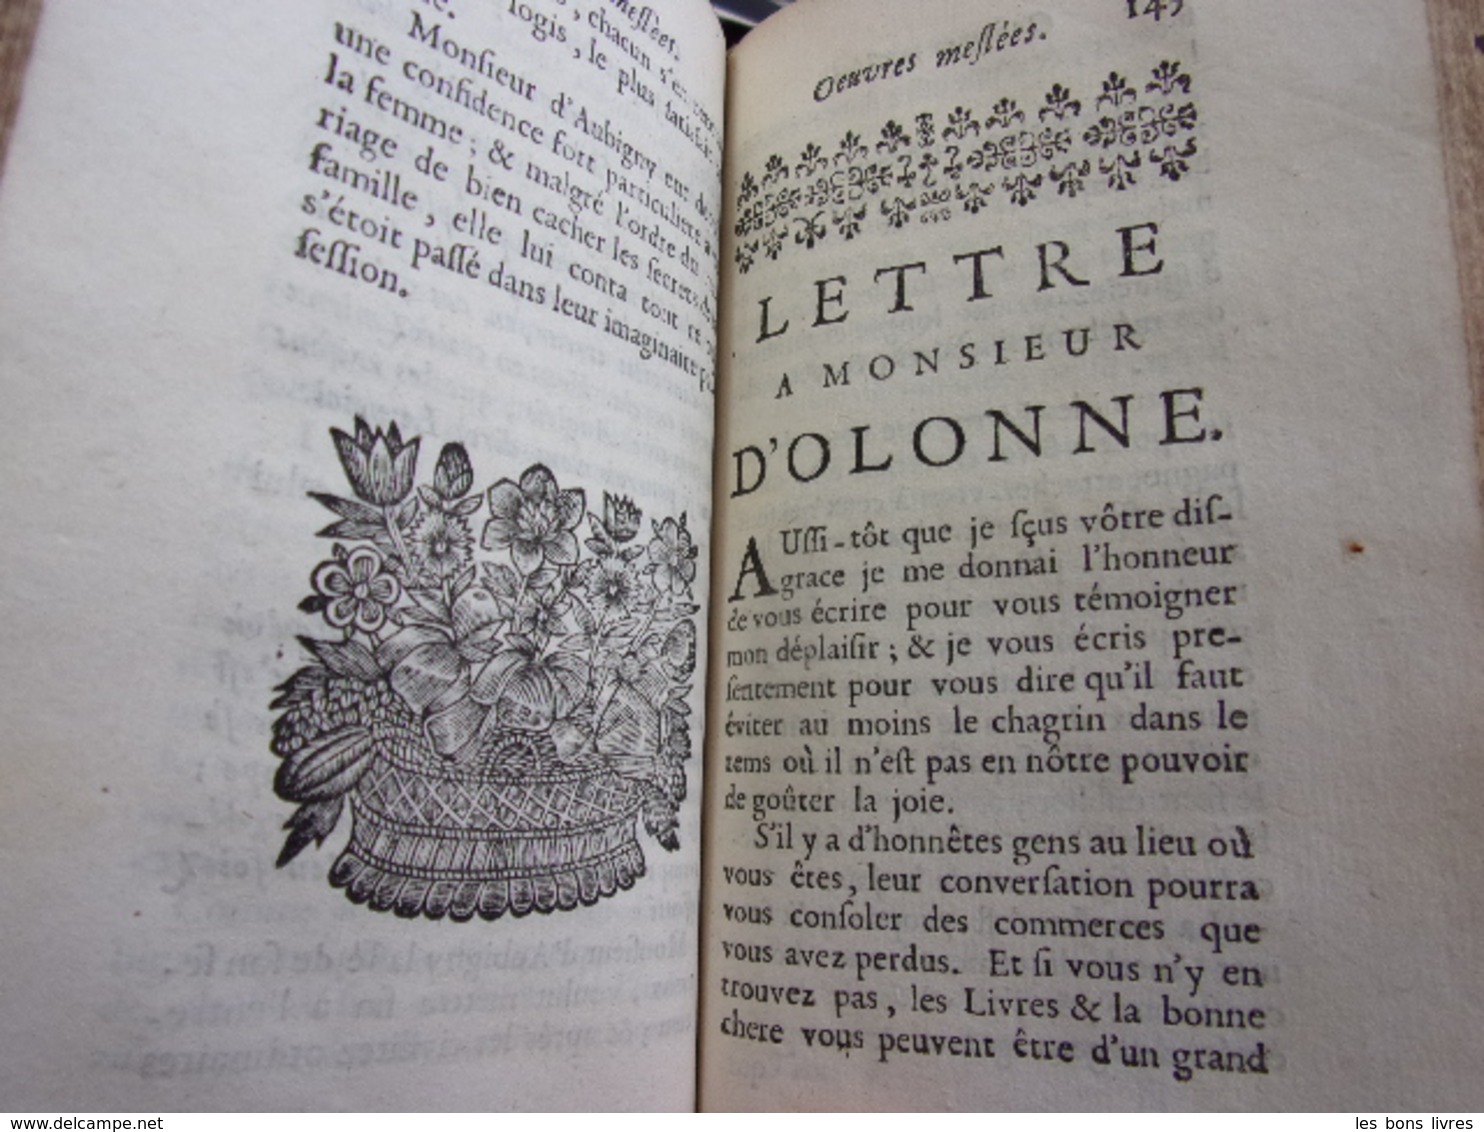 1692. Oeuvres meslées de Saint-Evremont 3/3 vols Philosophie & Histoire